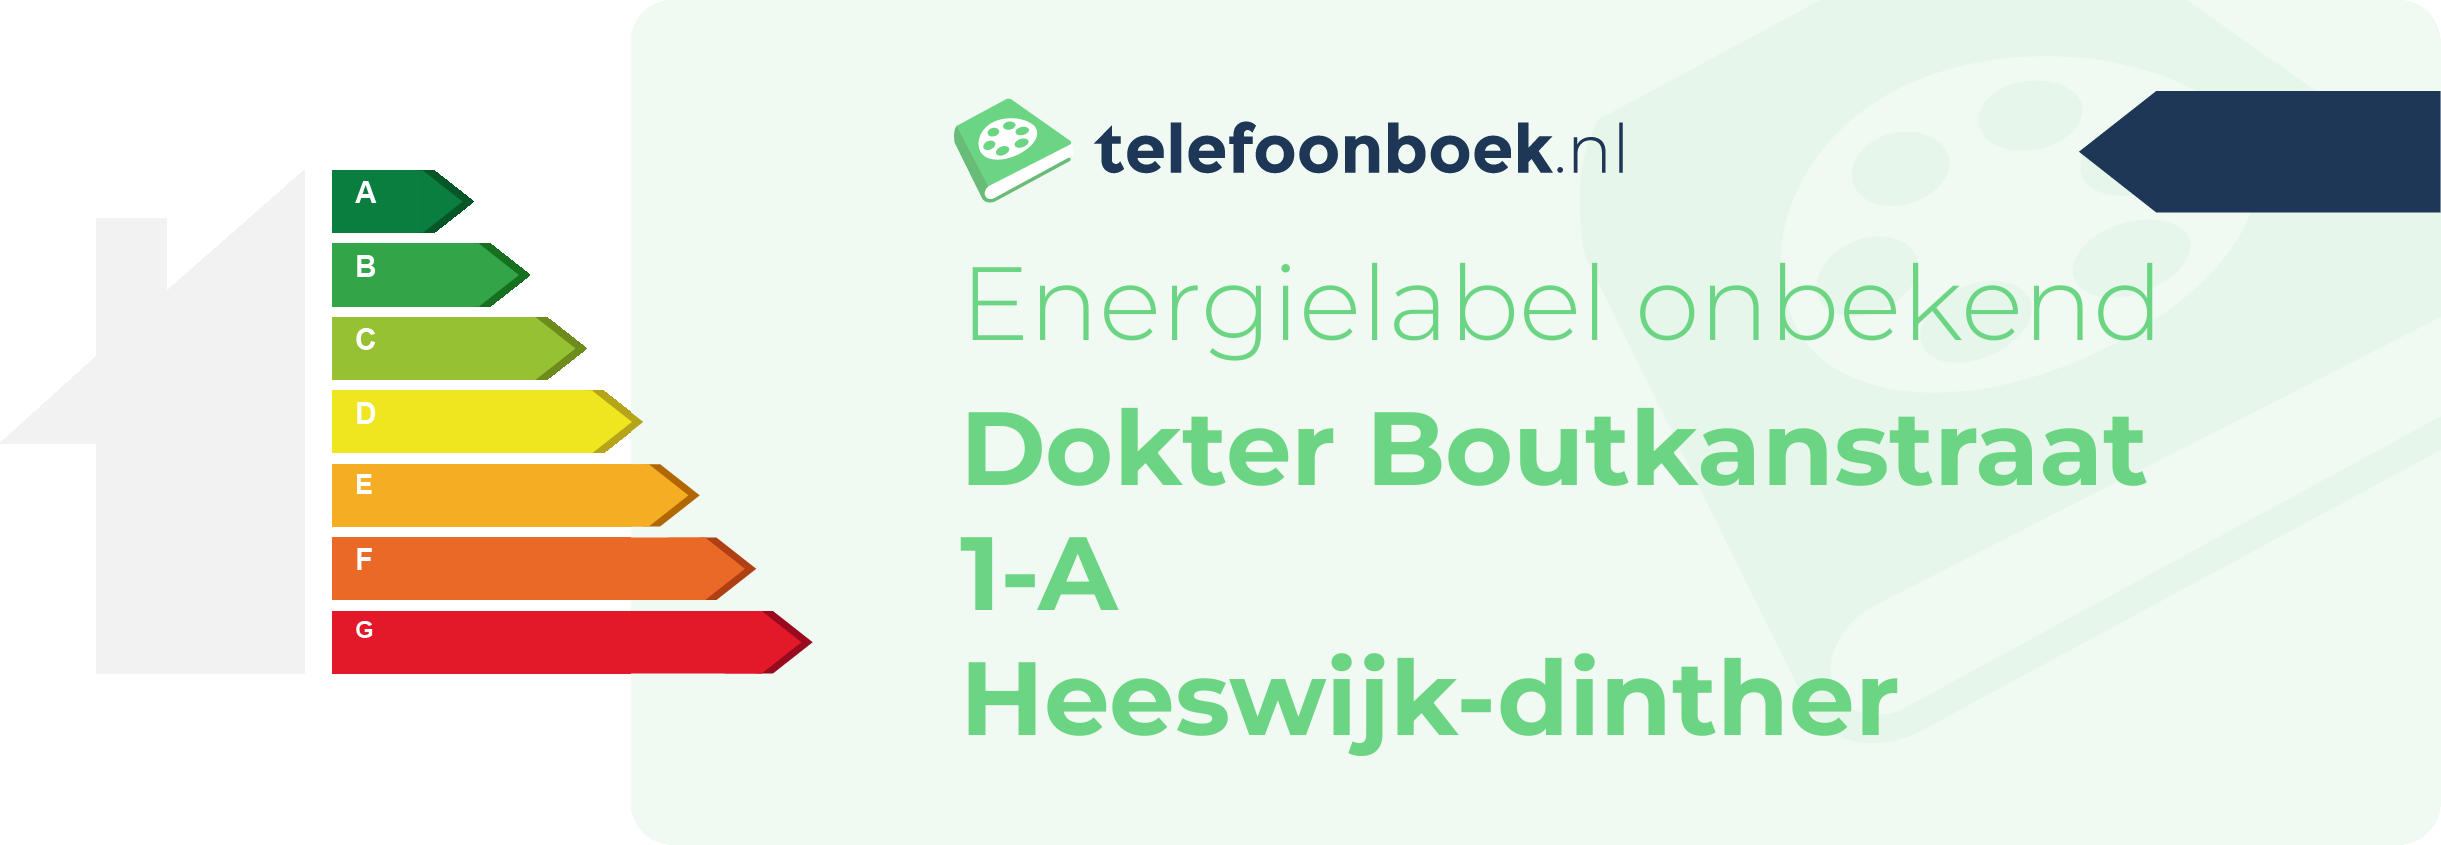 Energielabel Dokter Boutkanstraat 1-A Heeswijk-Dinther